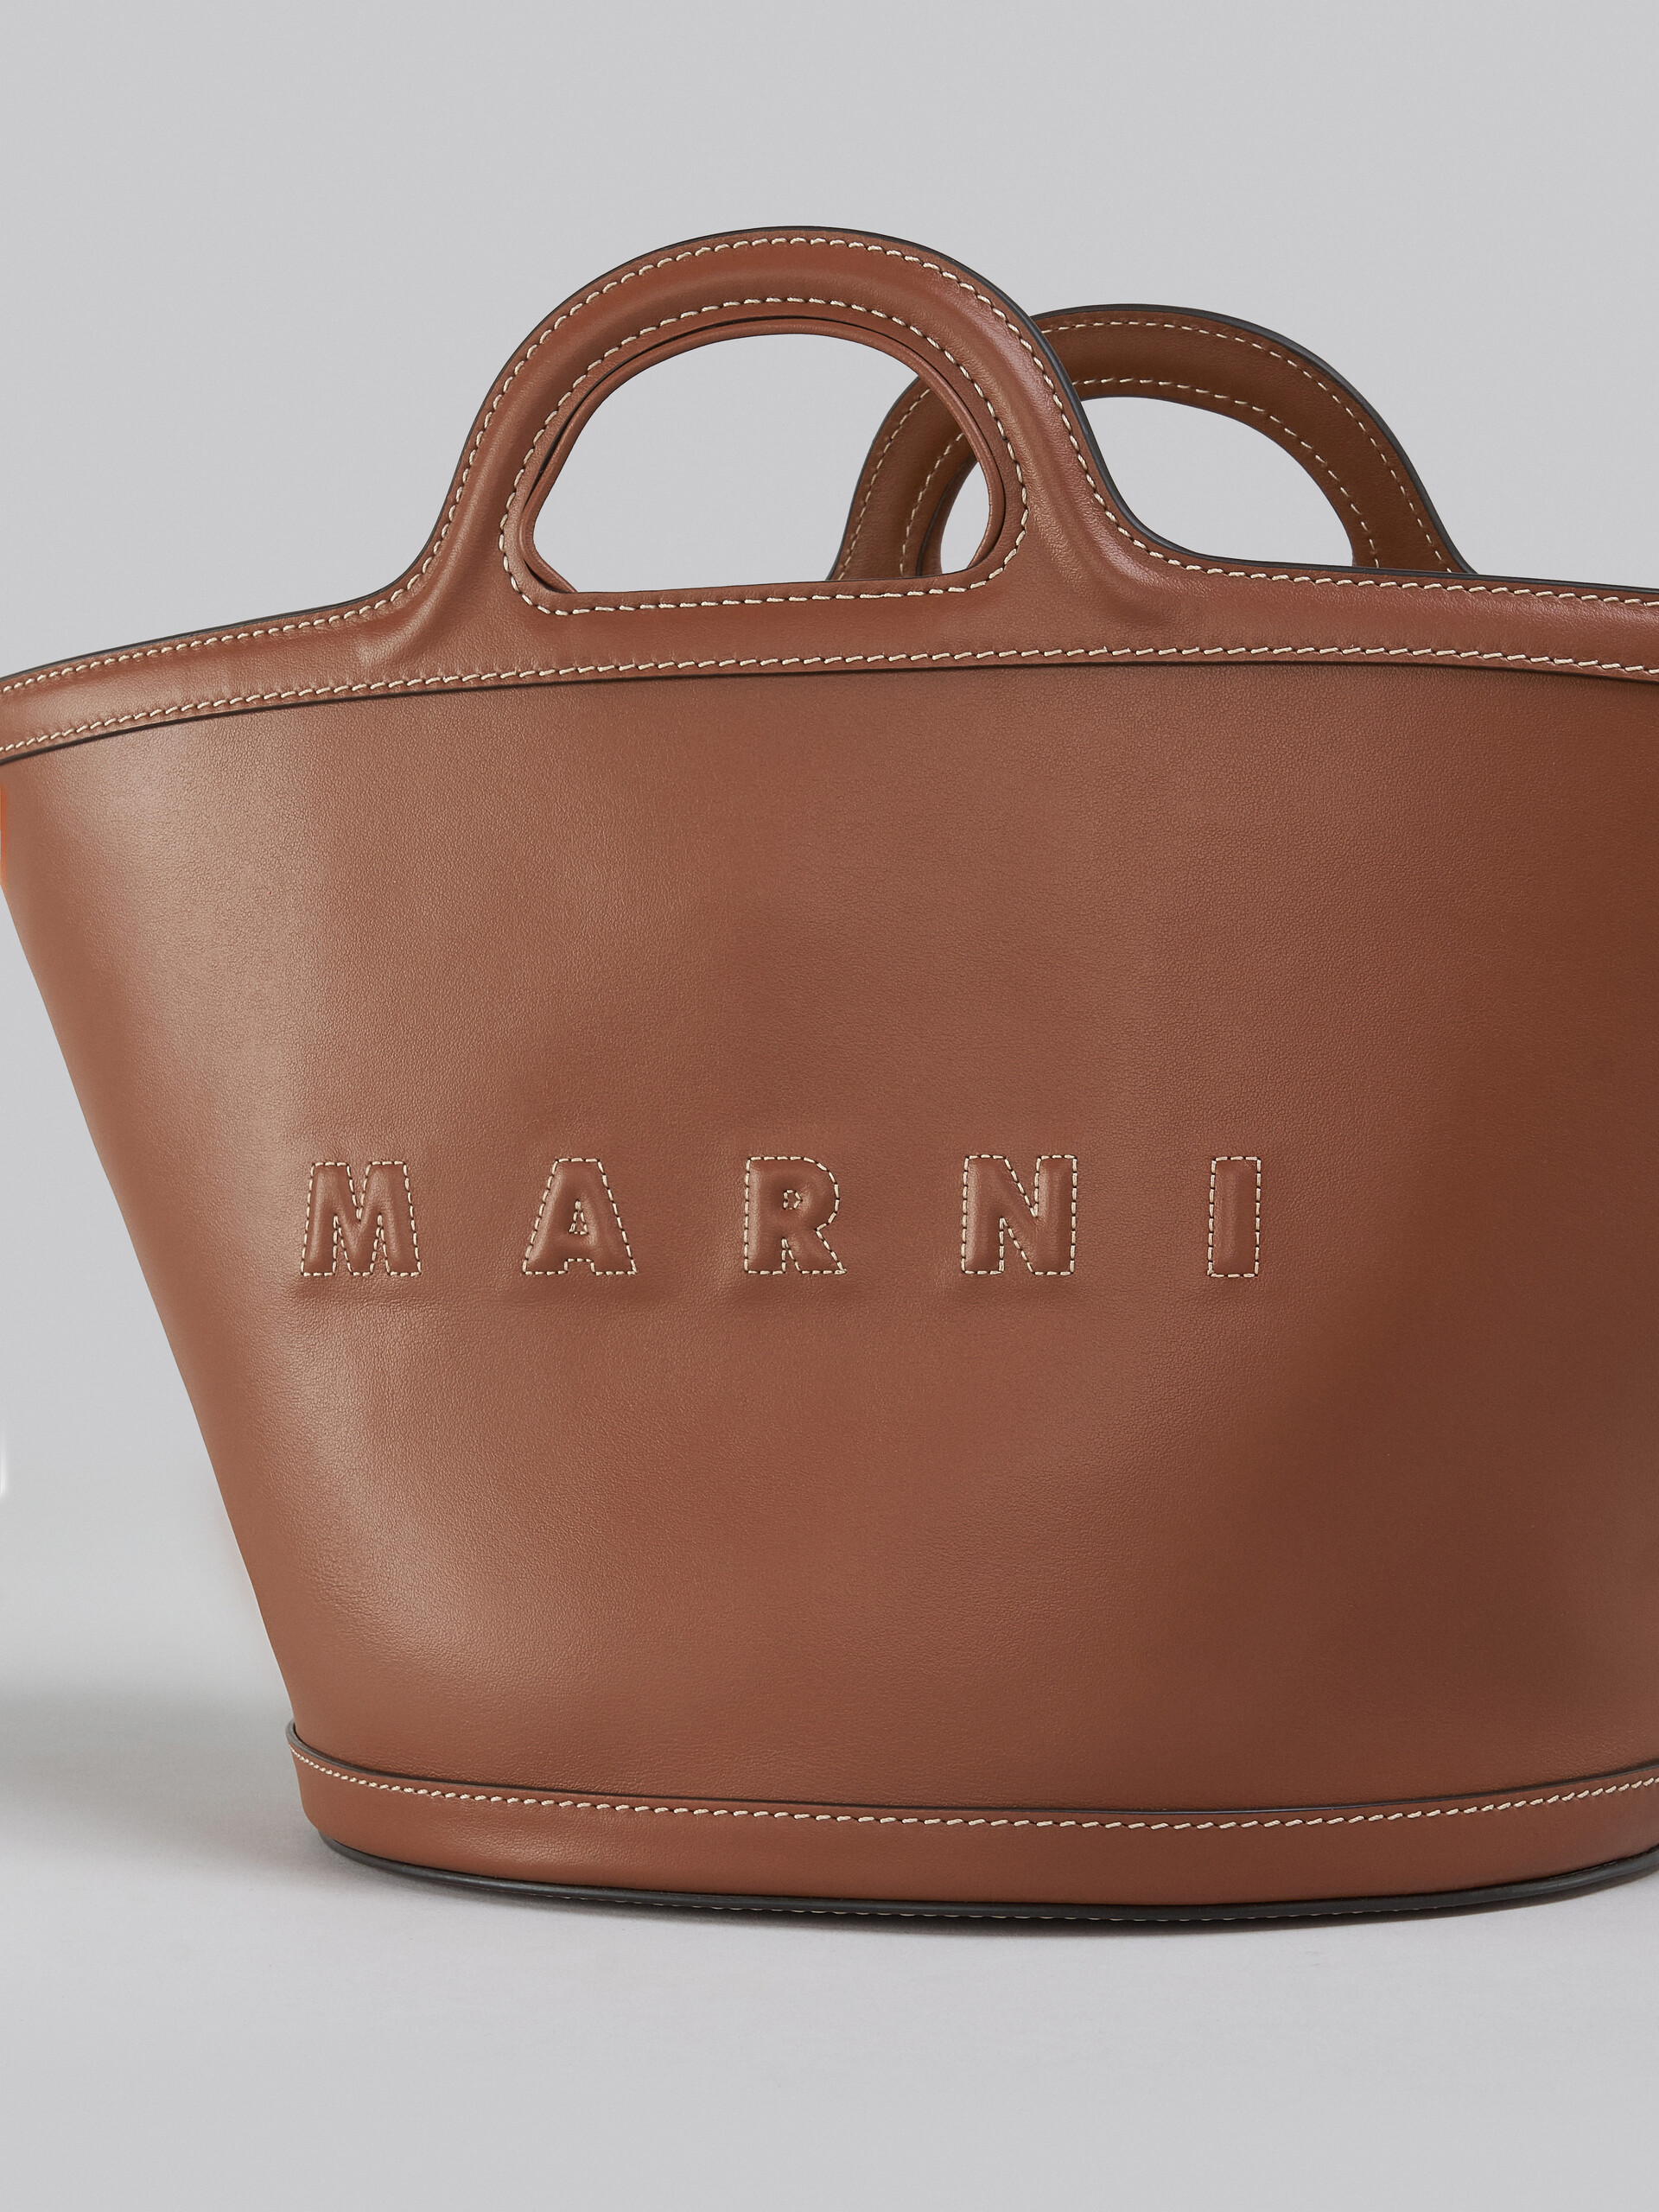 Marni Tropicalia Small Leather Tote Bag